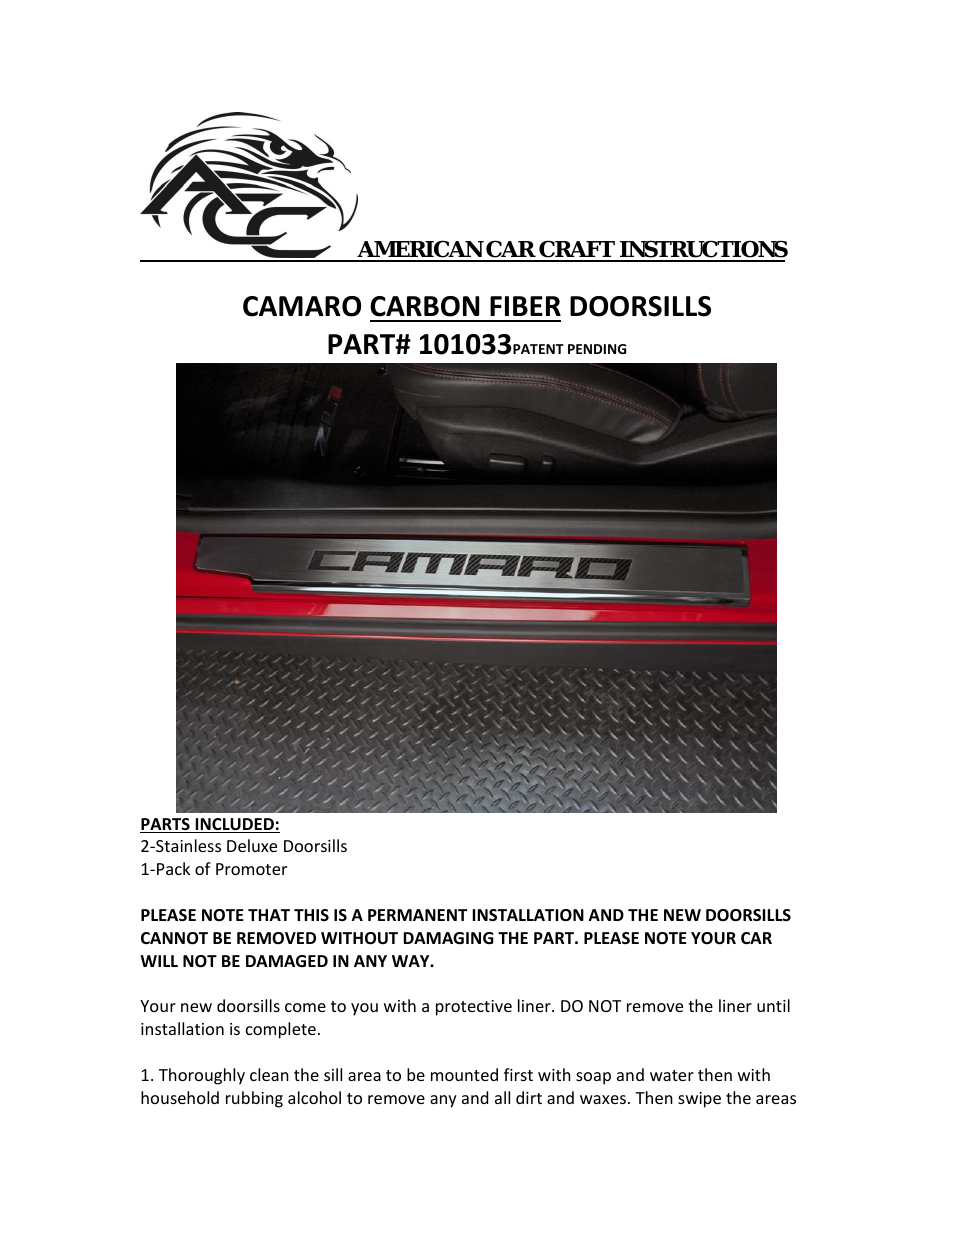 Camaro Doorsills Executive Series Brushed_Polished with Carbon Fiber "Camaro Inlay 2Pc 2010-2013"